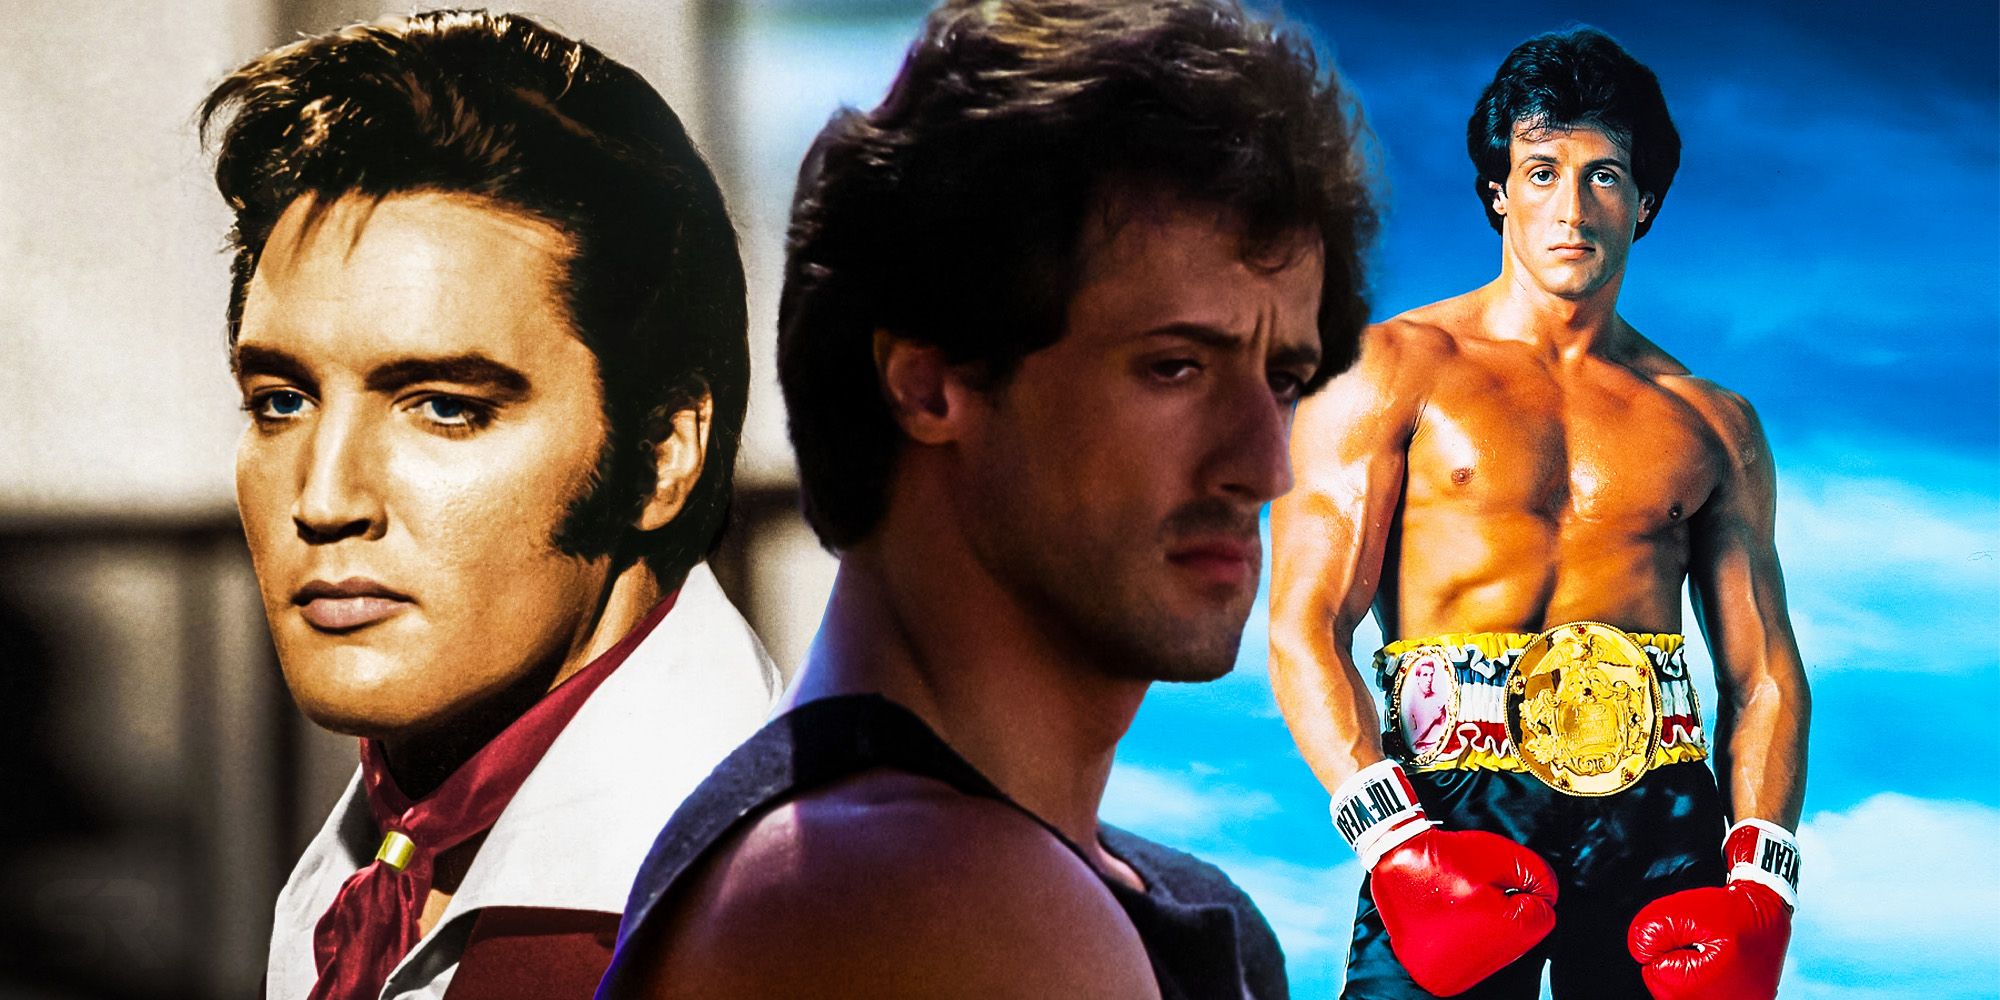 Rocky no le tenía miedo a nadie, pero Sly Stallone sí le tenía miedo a... ¿Elvis?